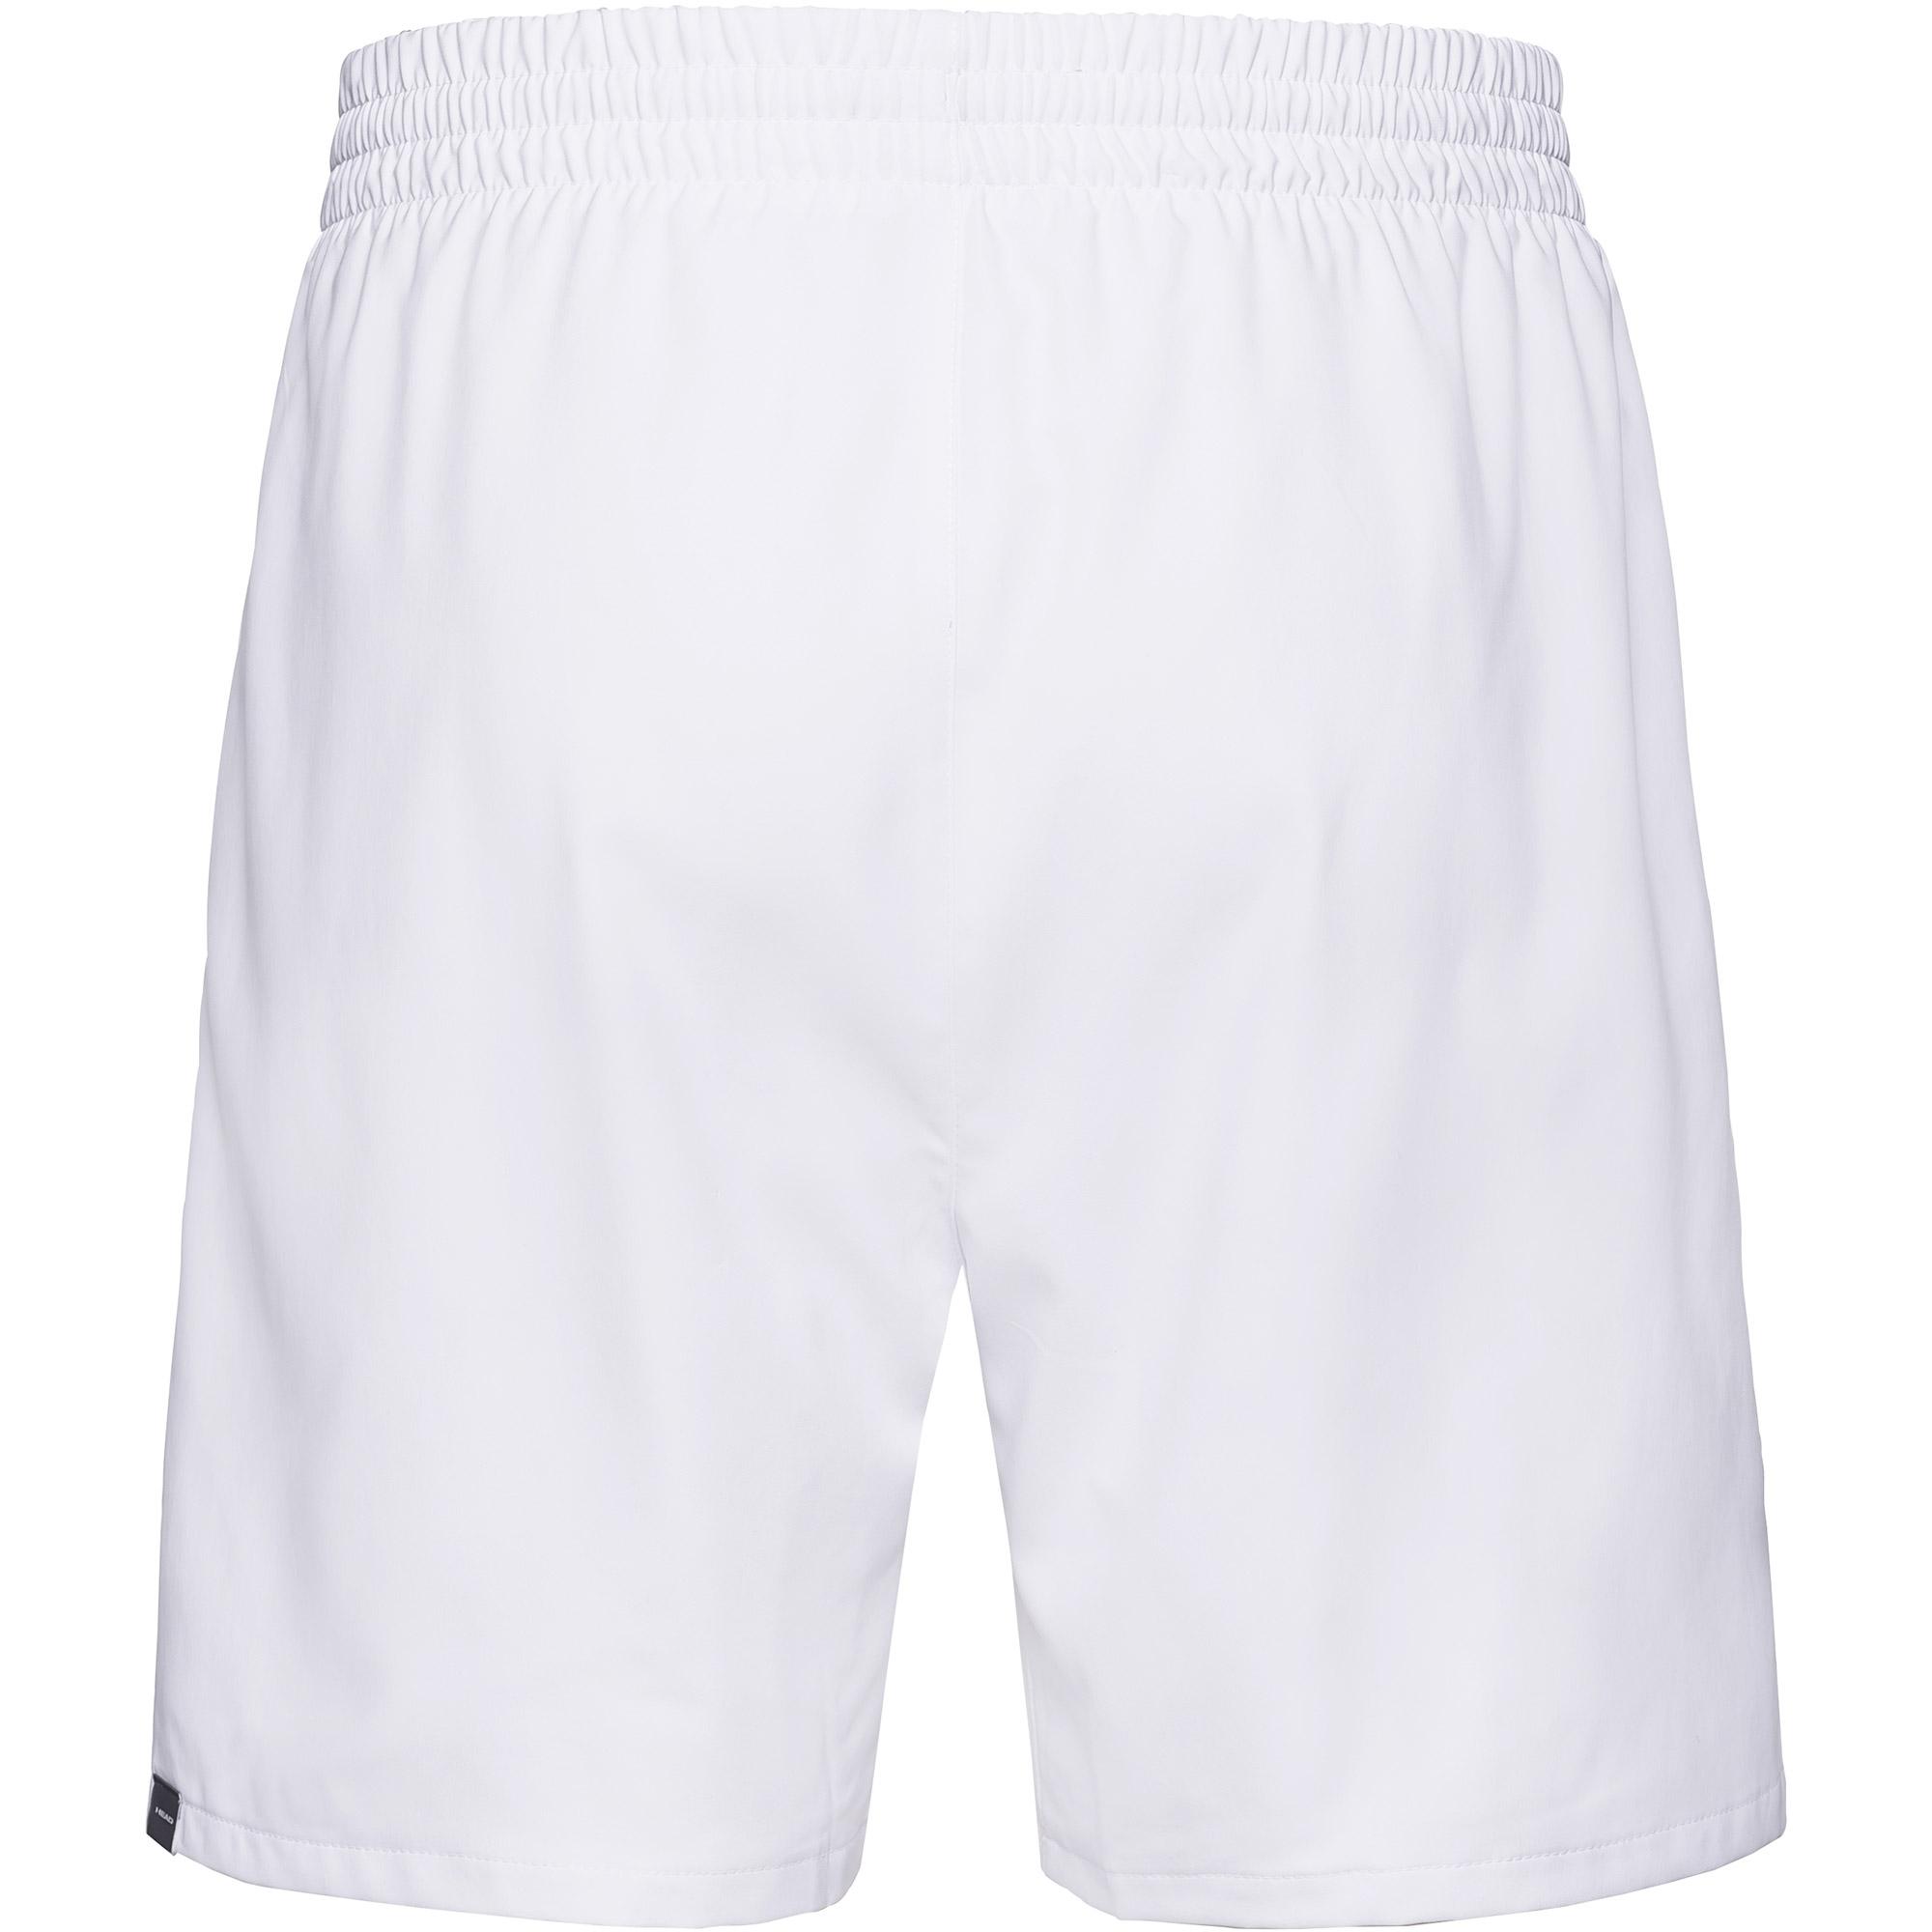 Head Mens Club Shorts - White - Tennisnuts.com